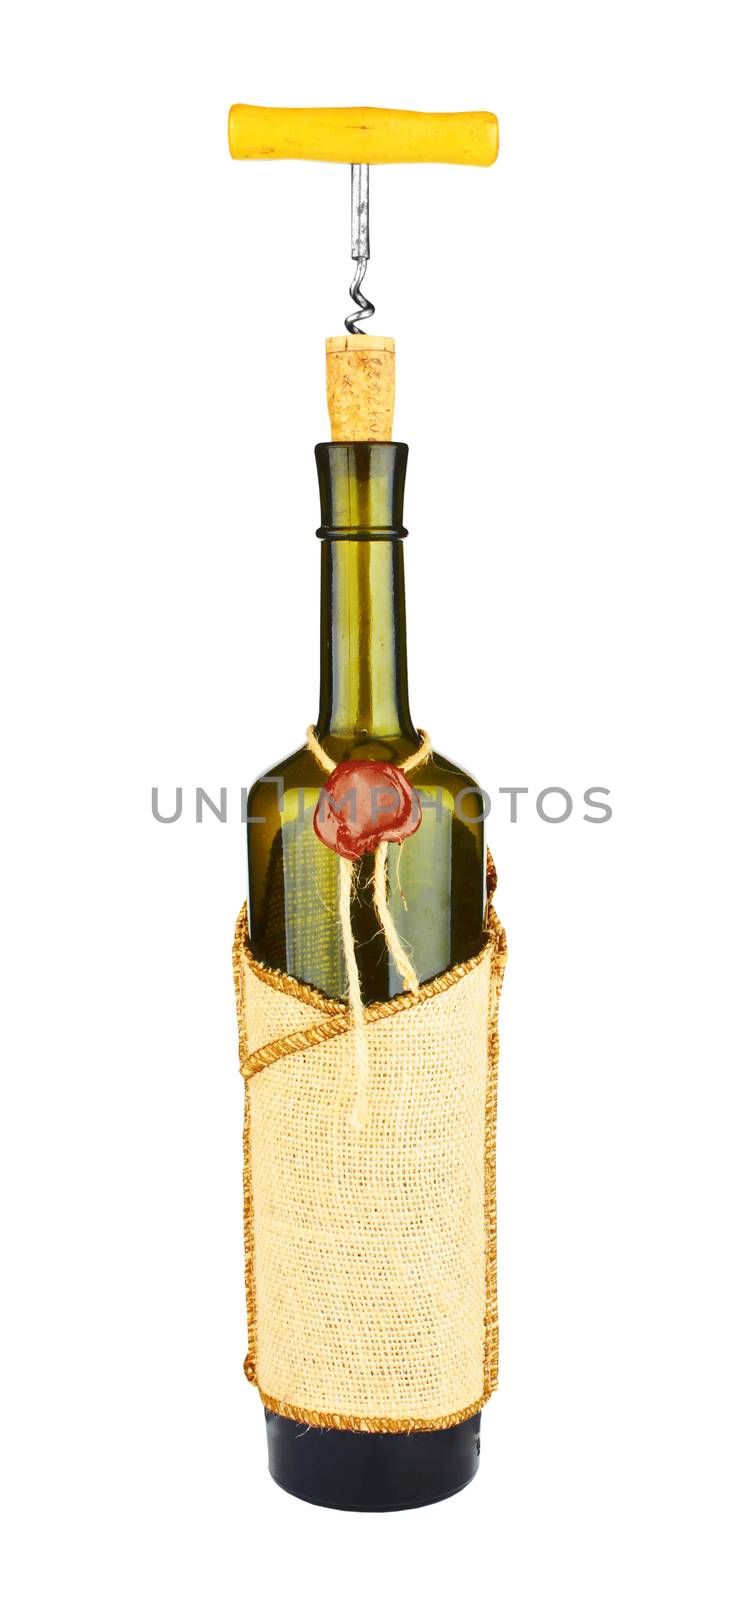 Corkscrew on a wine bottle by pioneer111